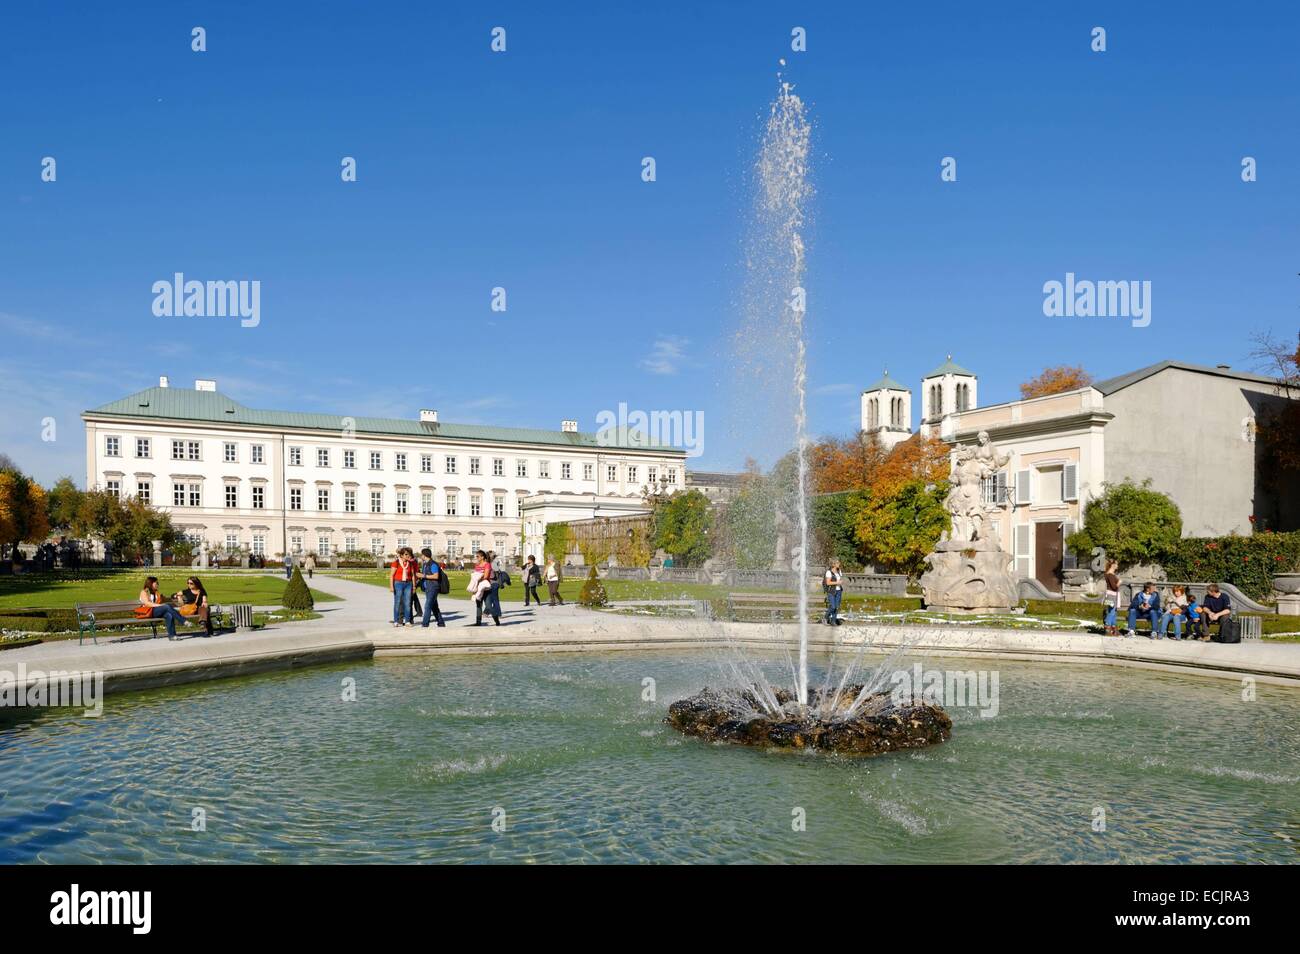 Autriche, Salzbourg, le centre historique classé au Patrimoine Mondial de l'UNESCO, le château et les jardins du château Mirabell, datant du 17e siècle Banque D'Images